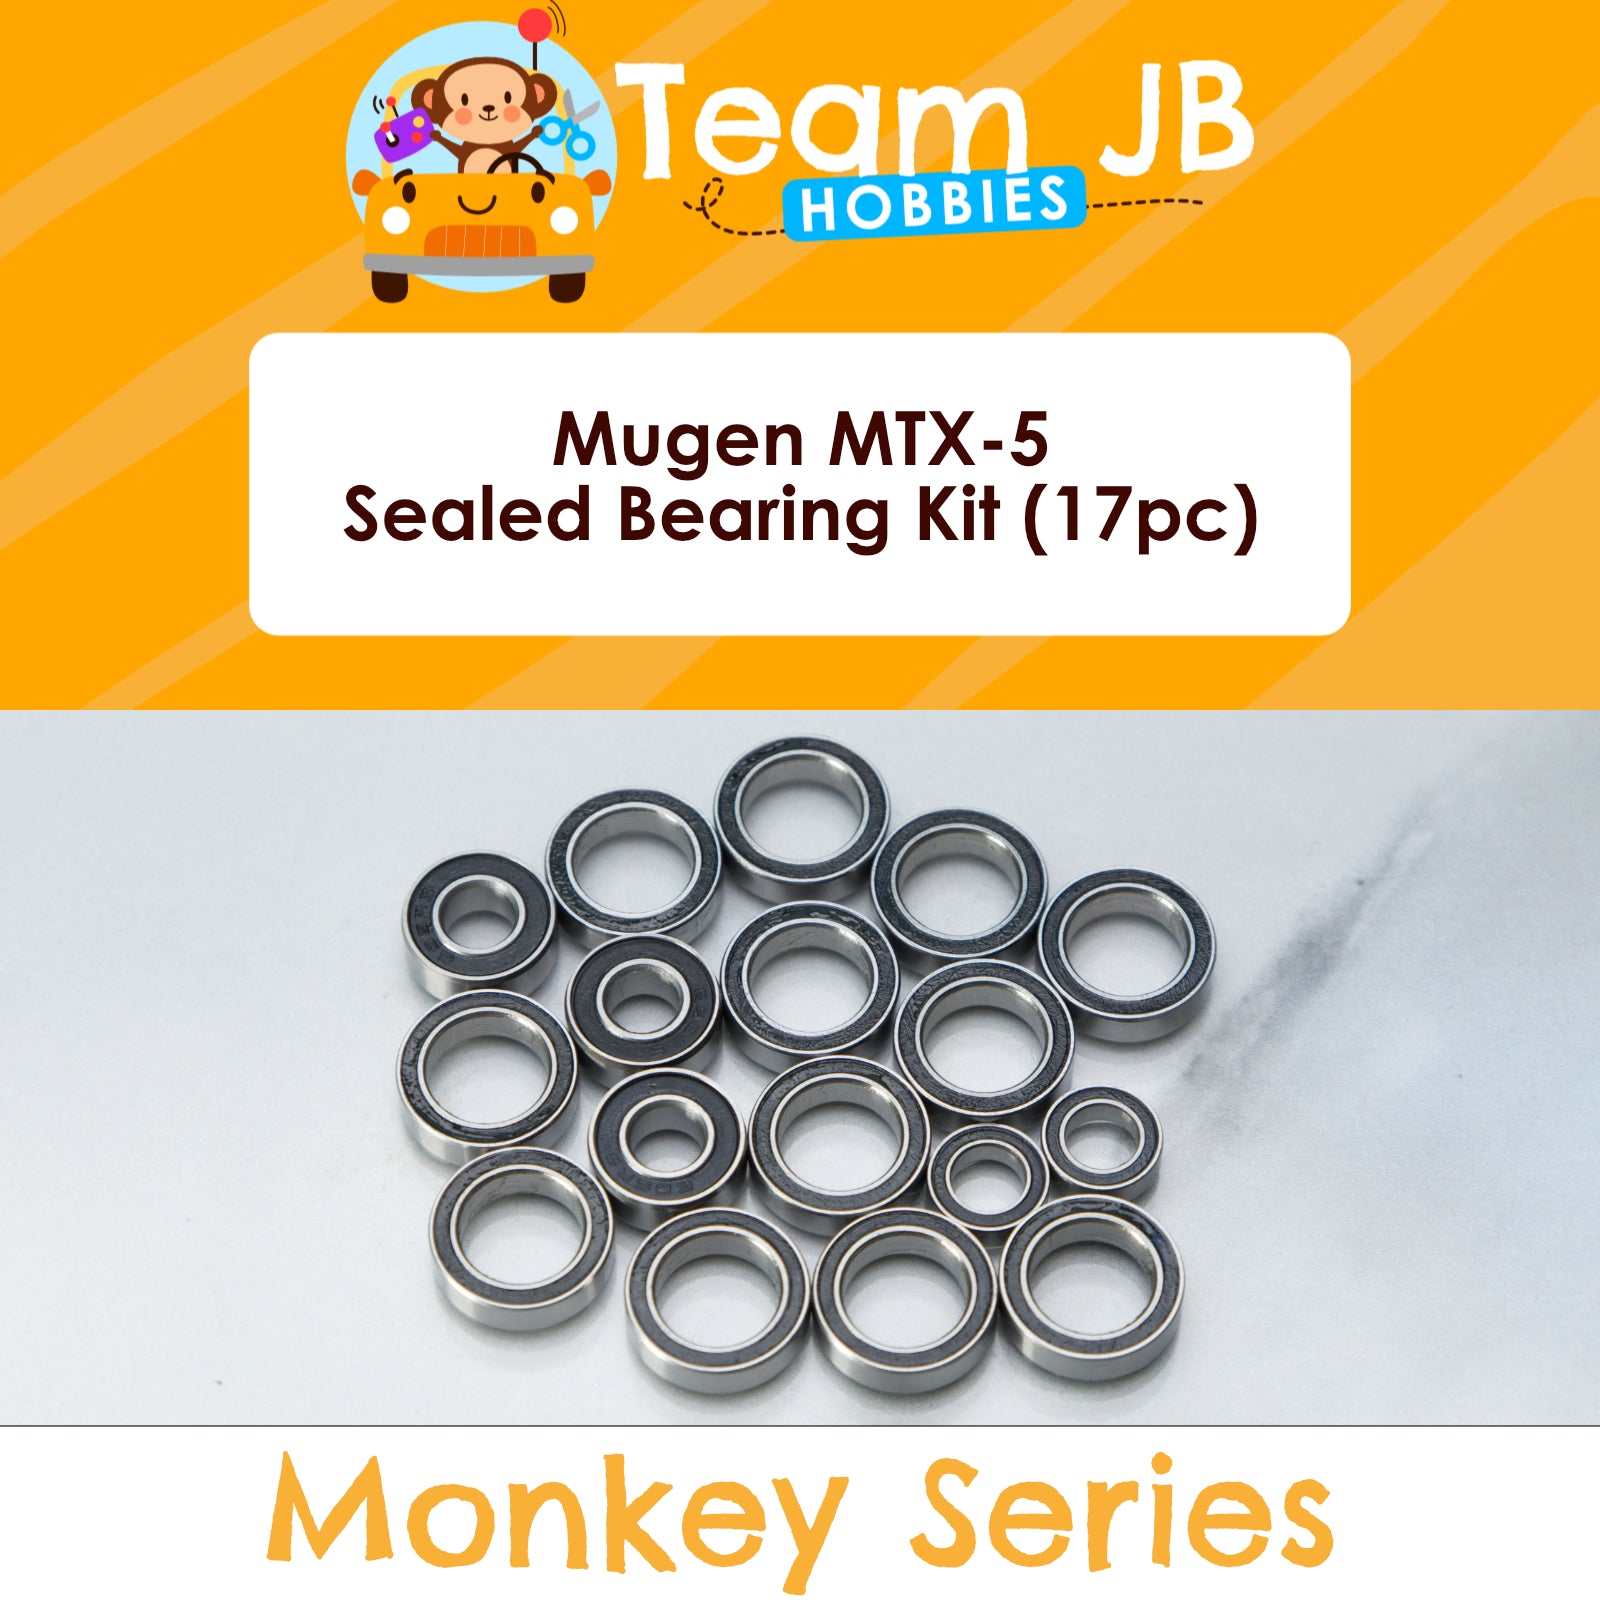 Mugen MTX-5 - Sealed Bearing Kit